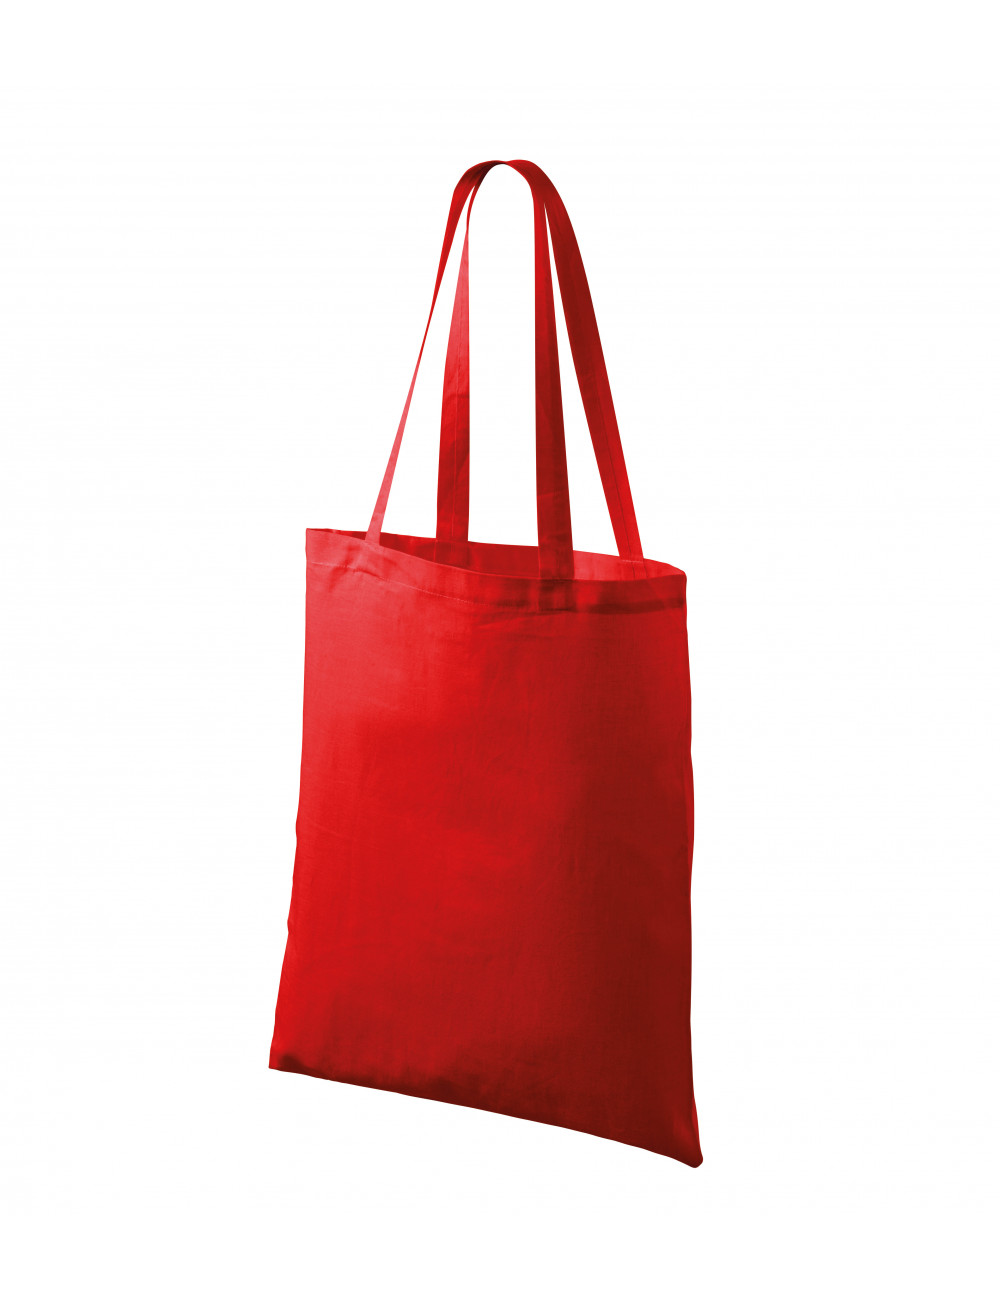 Unisex shopping bag handy 900 red Adler Malfini